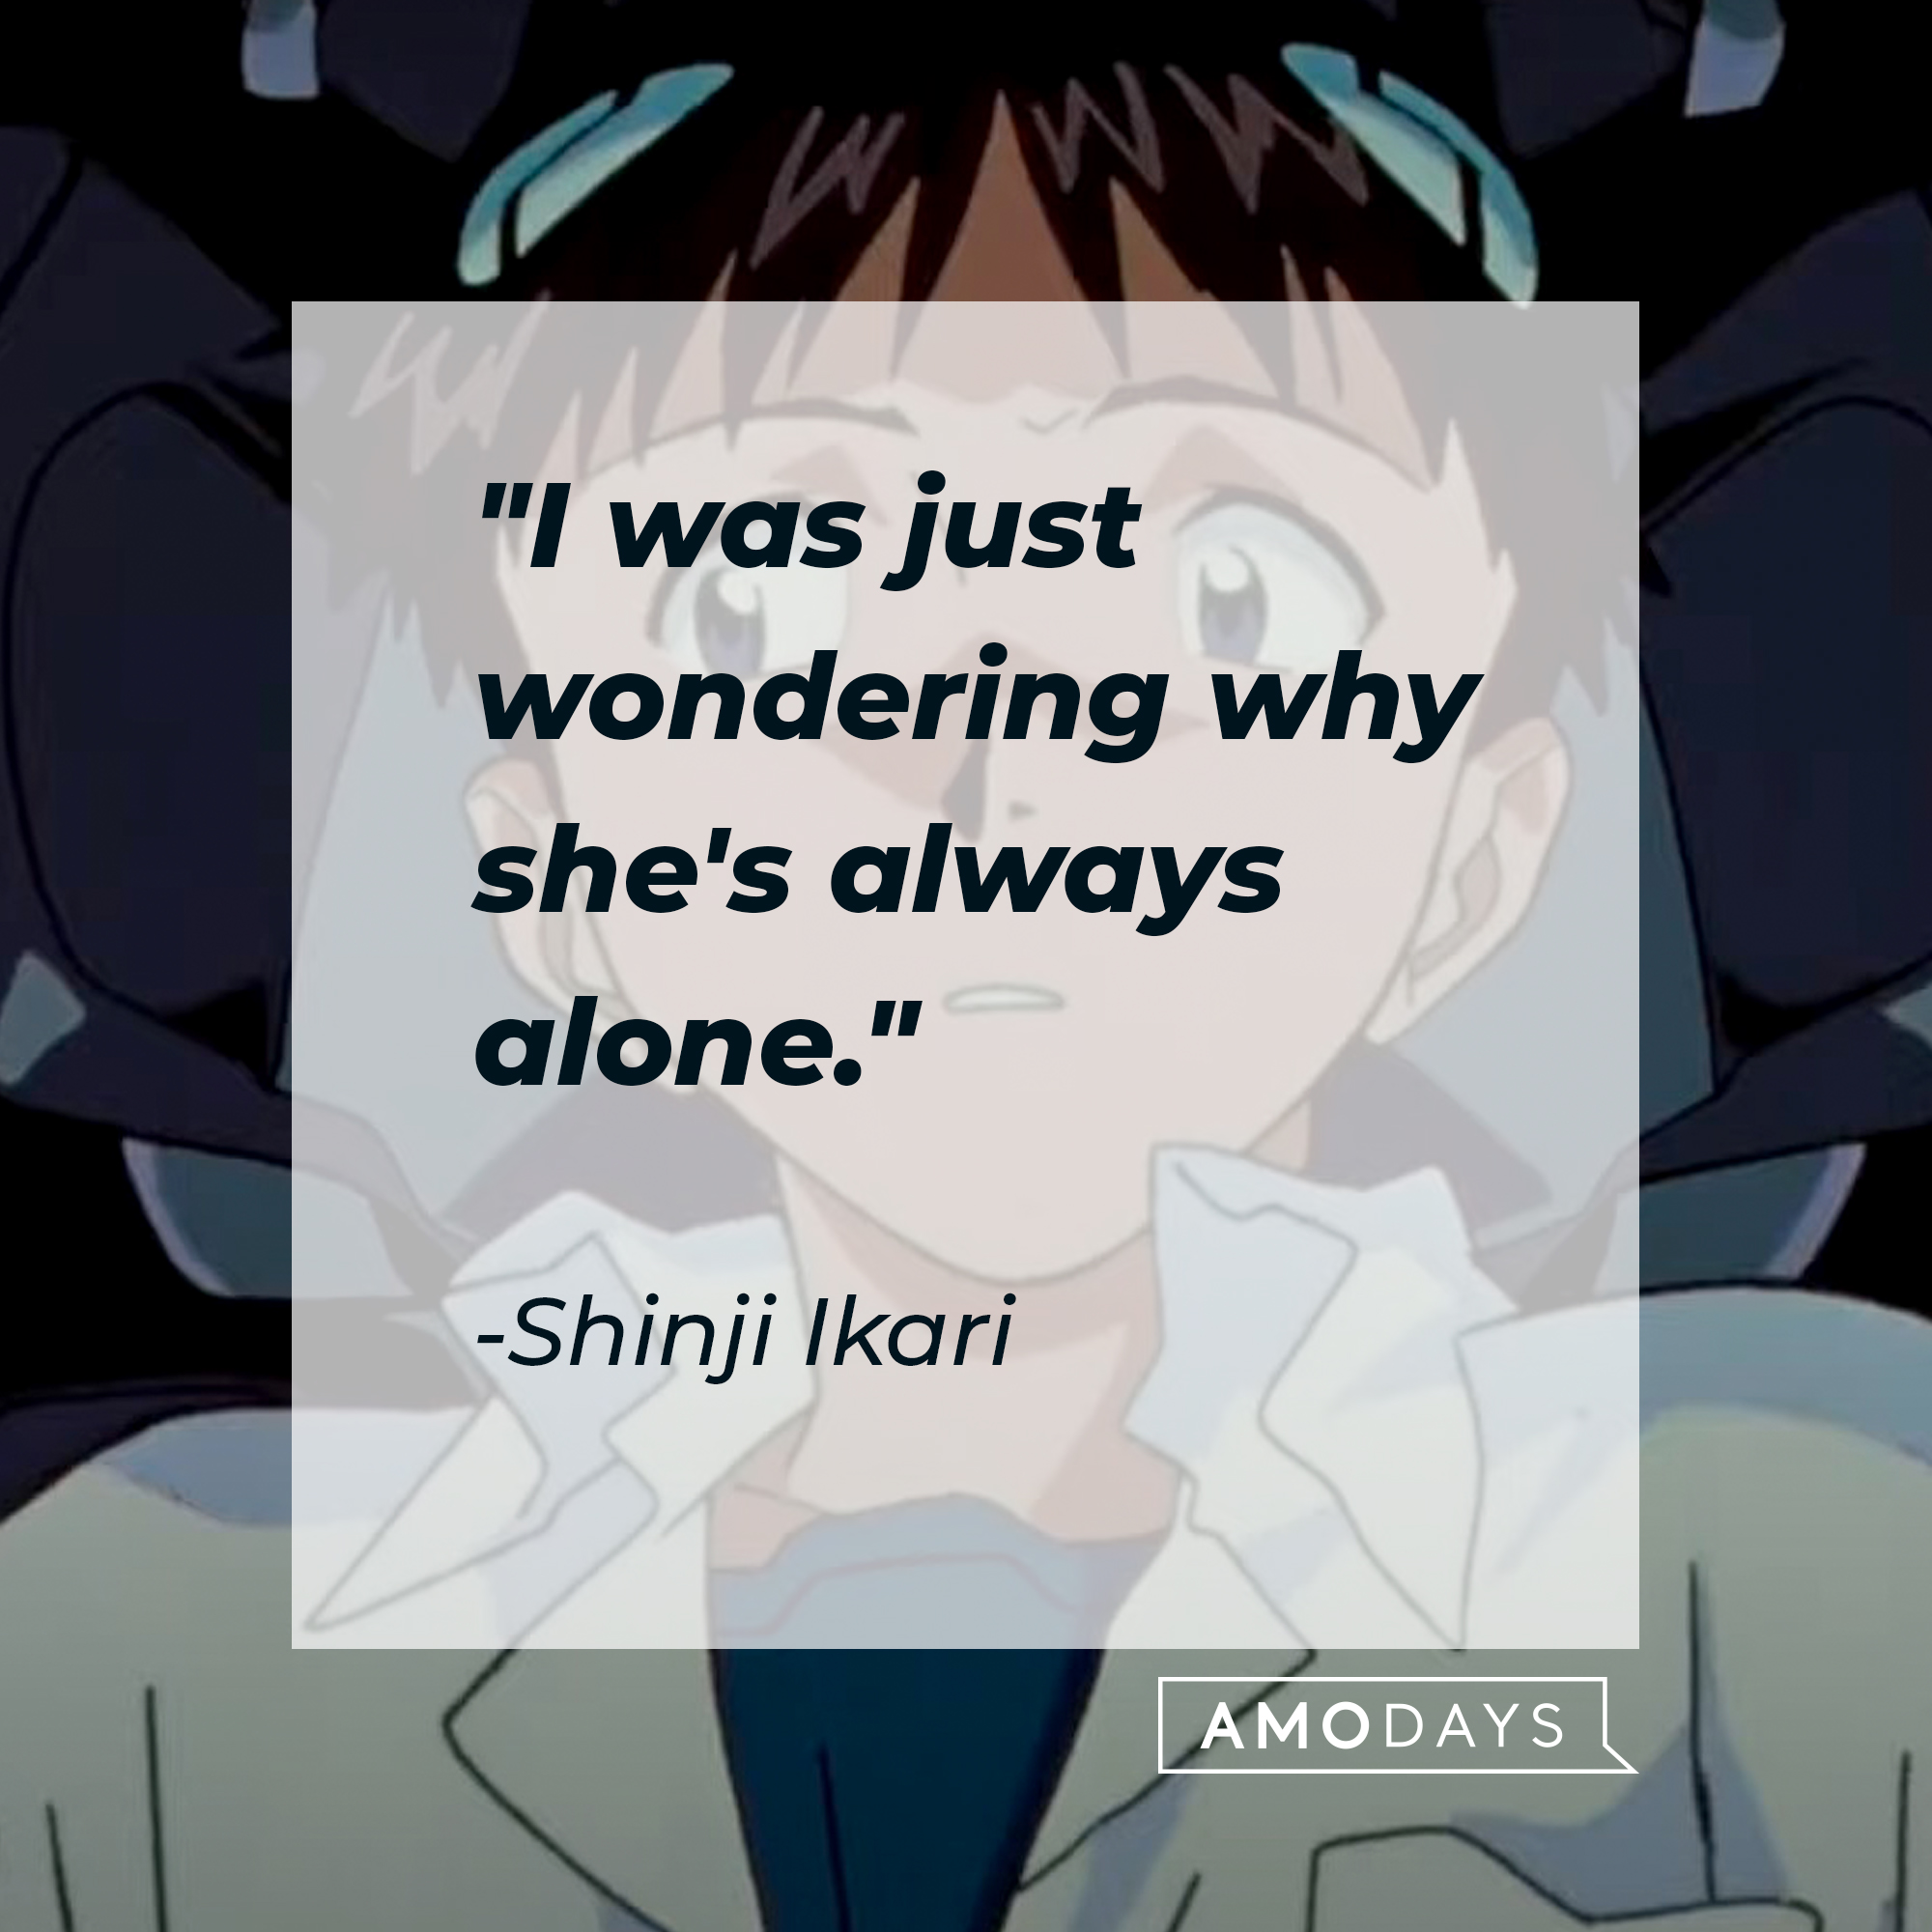 Shinji Ikari's quote: "I was just wondering why she's always alone." | Source: Facebook.com/EvangelionMovie